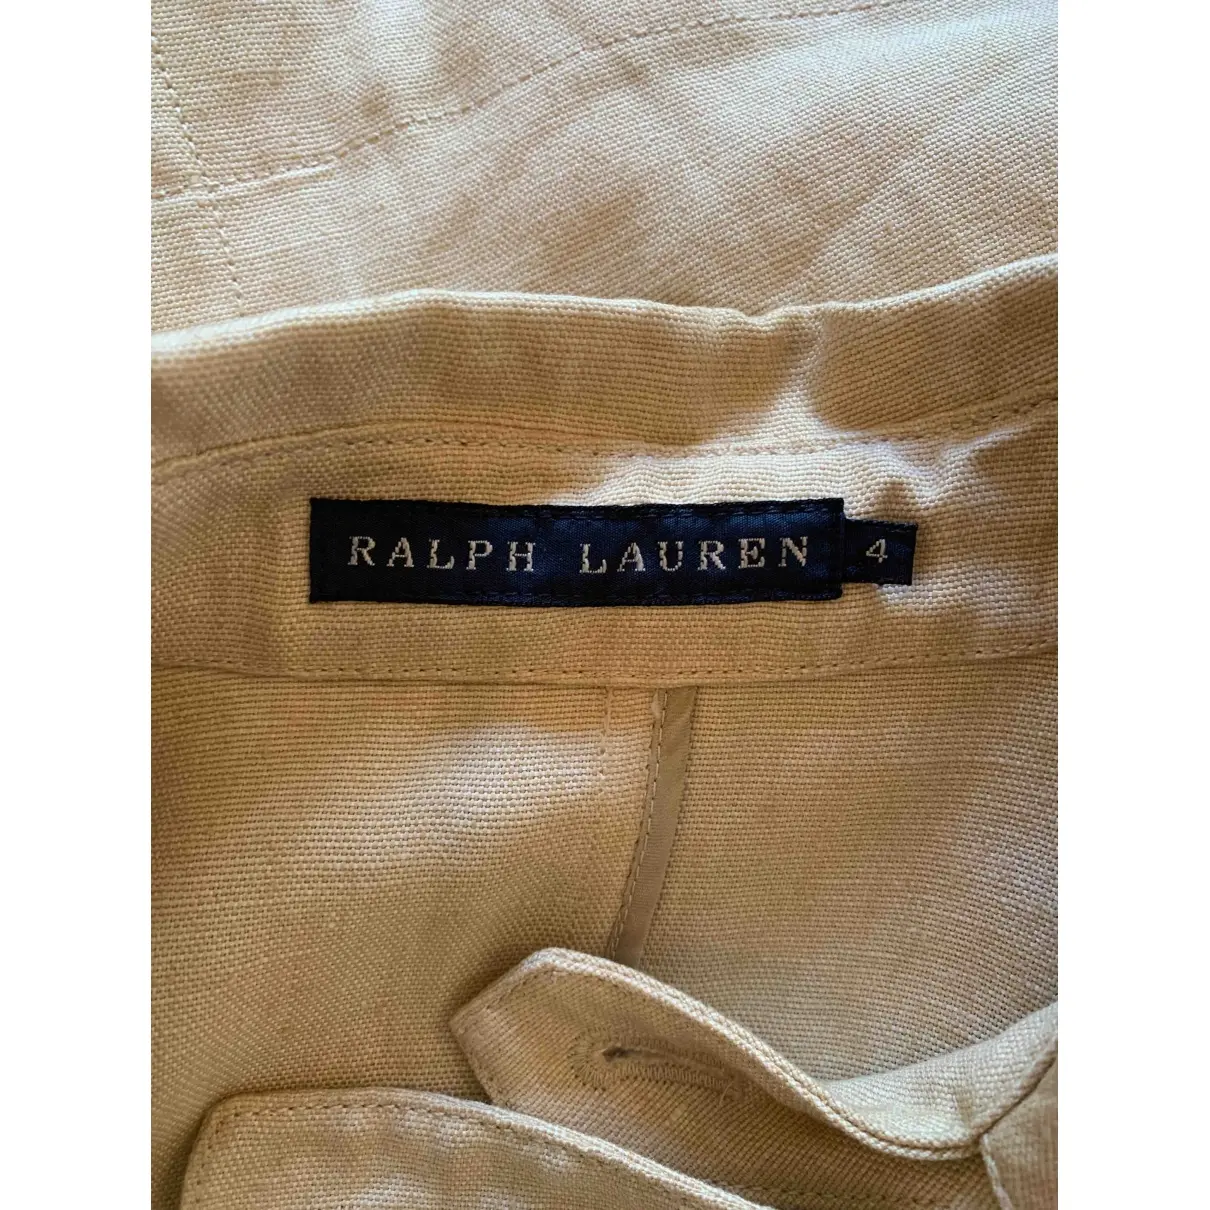 Buy Ralph Lauren Linen trench coat online